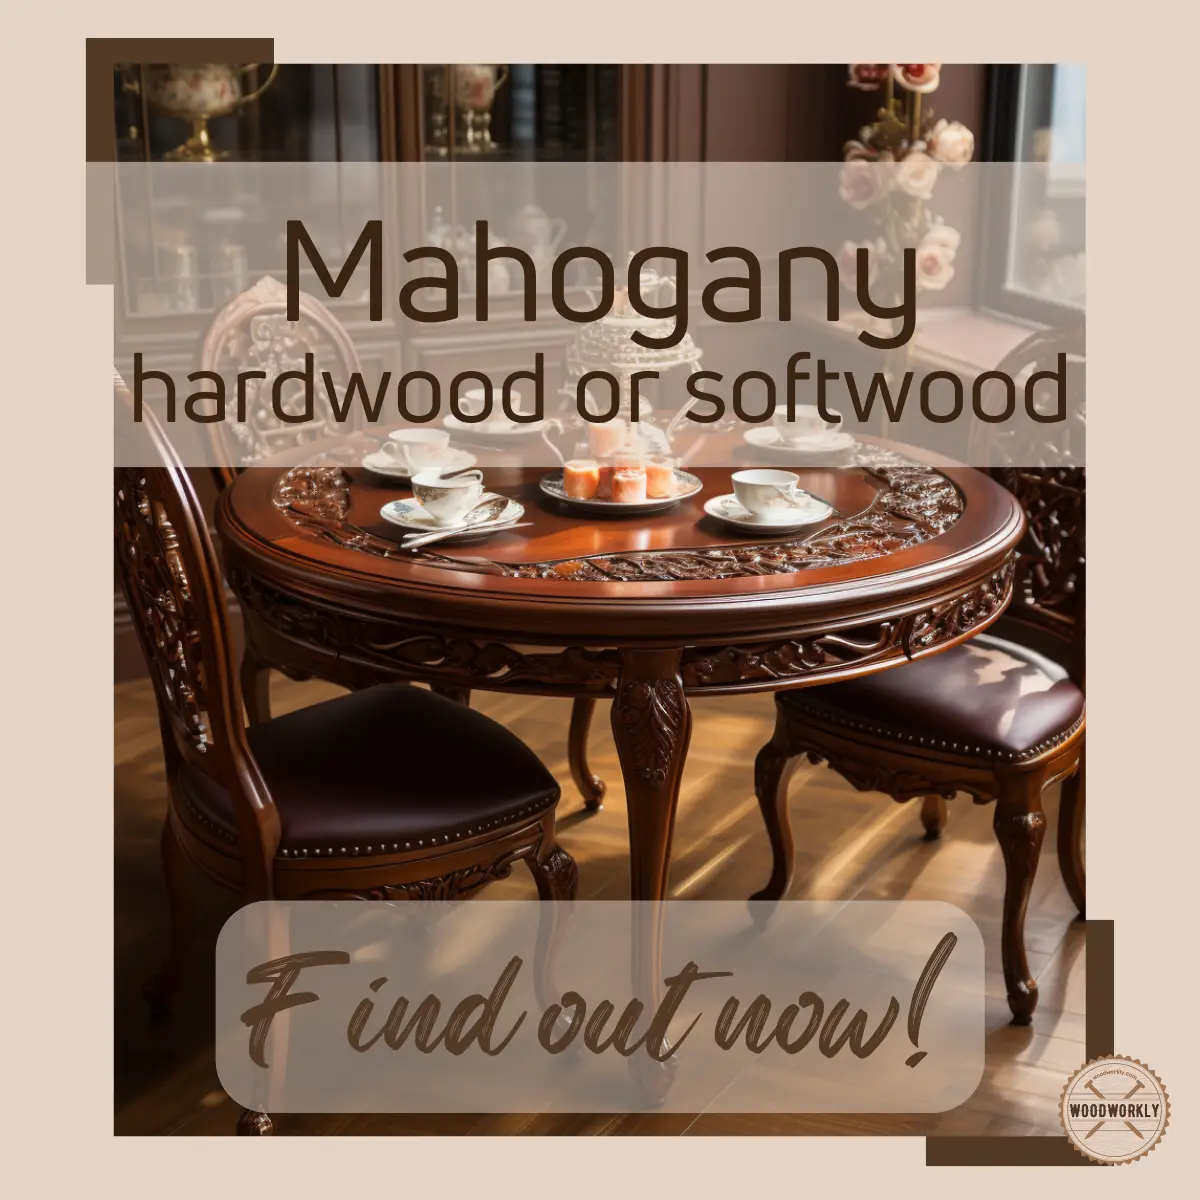 Is Mahogany A Hardwood